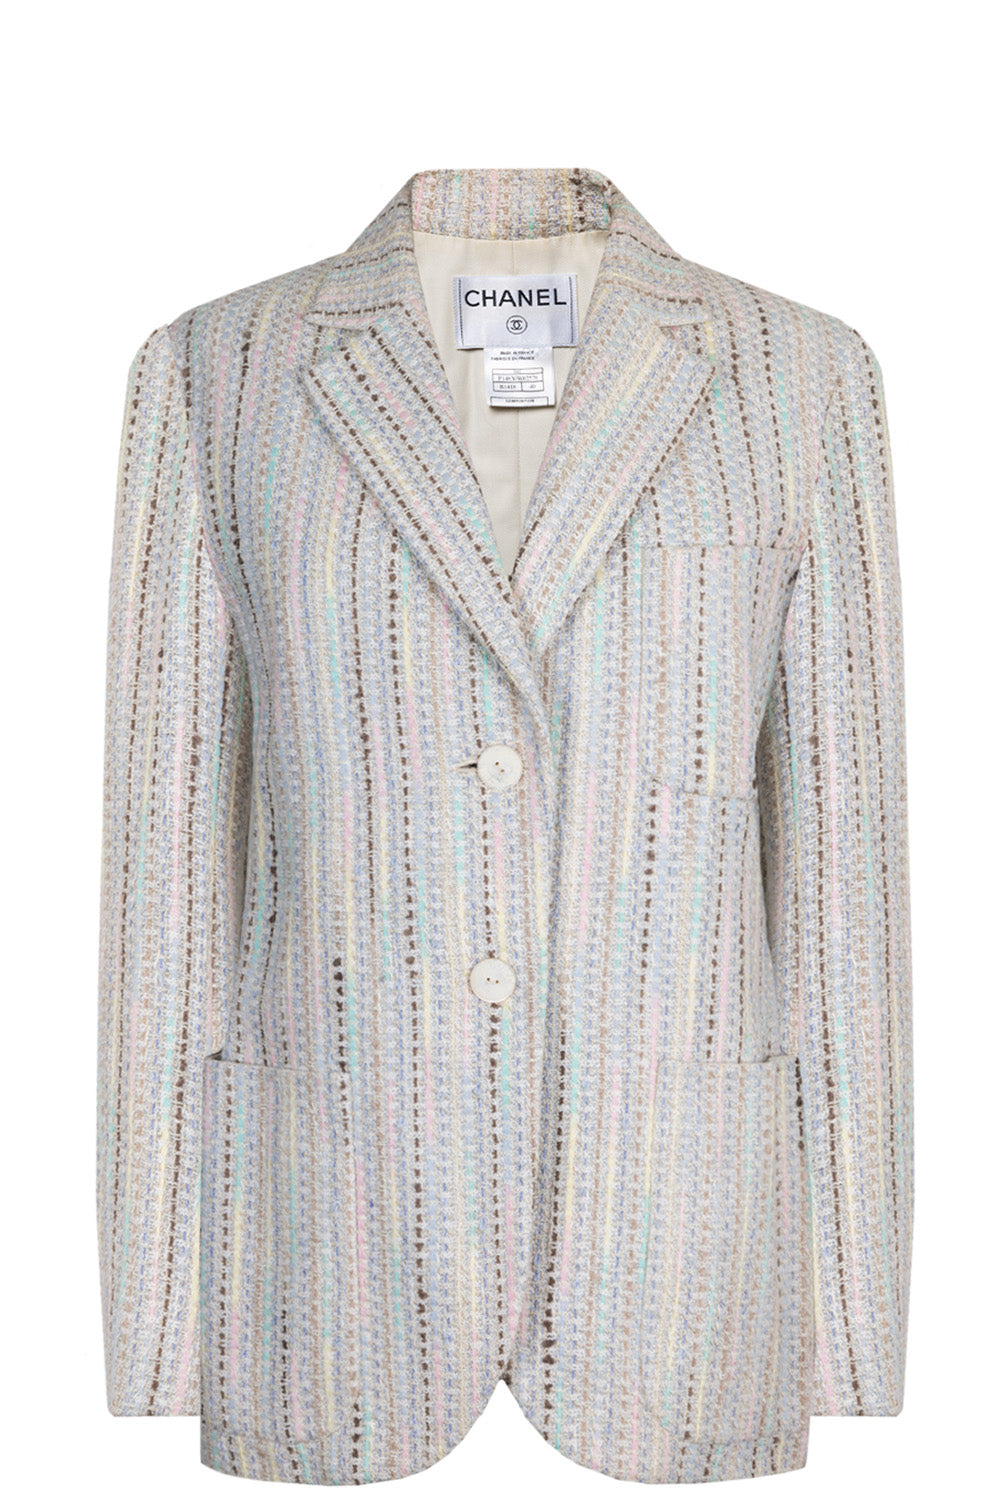 CHANEL Jacket Tweed Striped Multicolor 00C